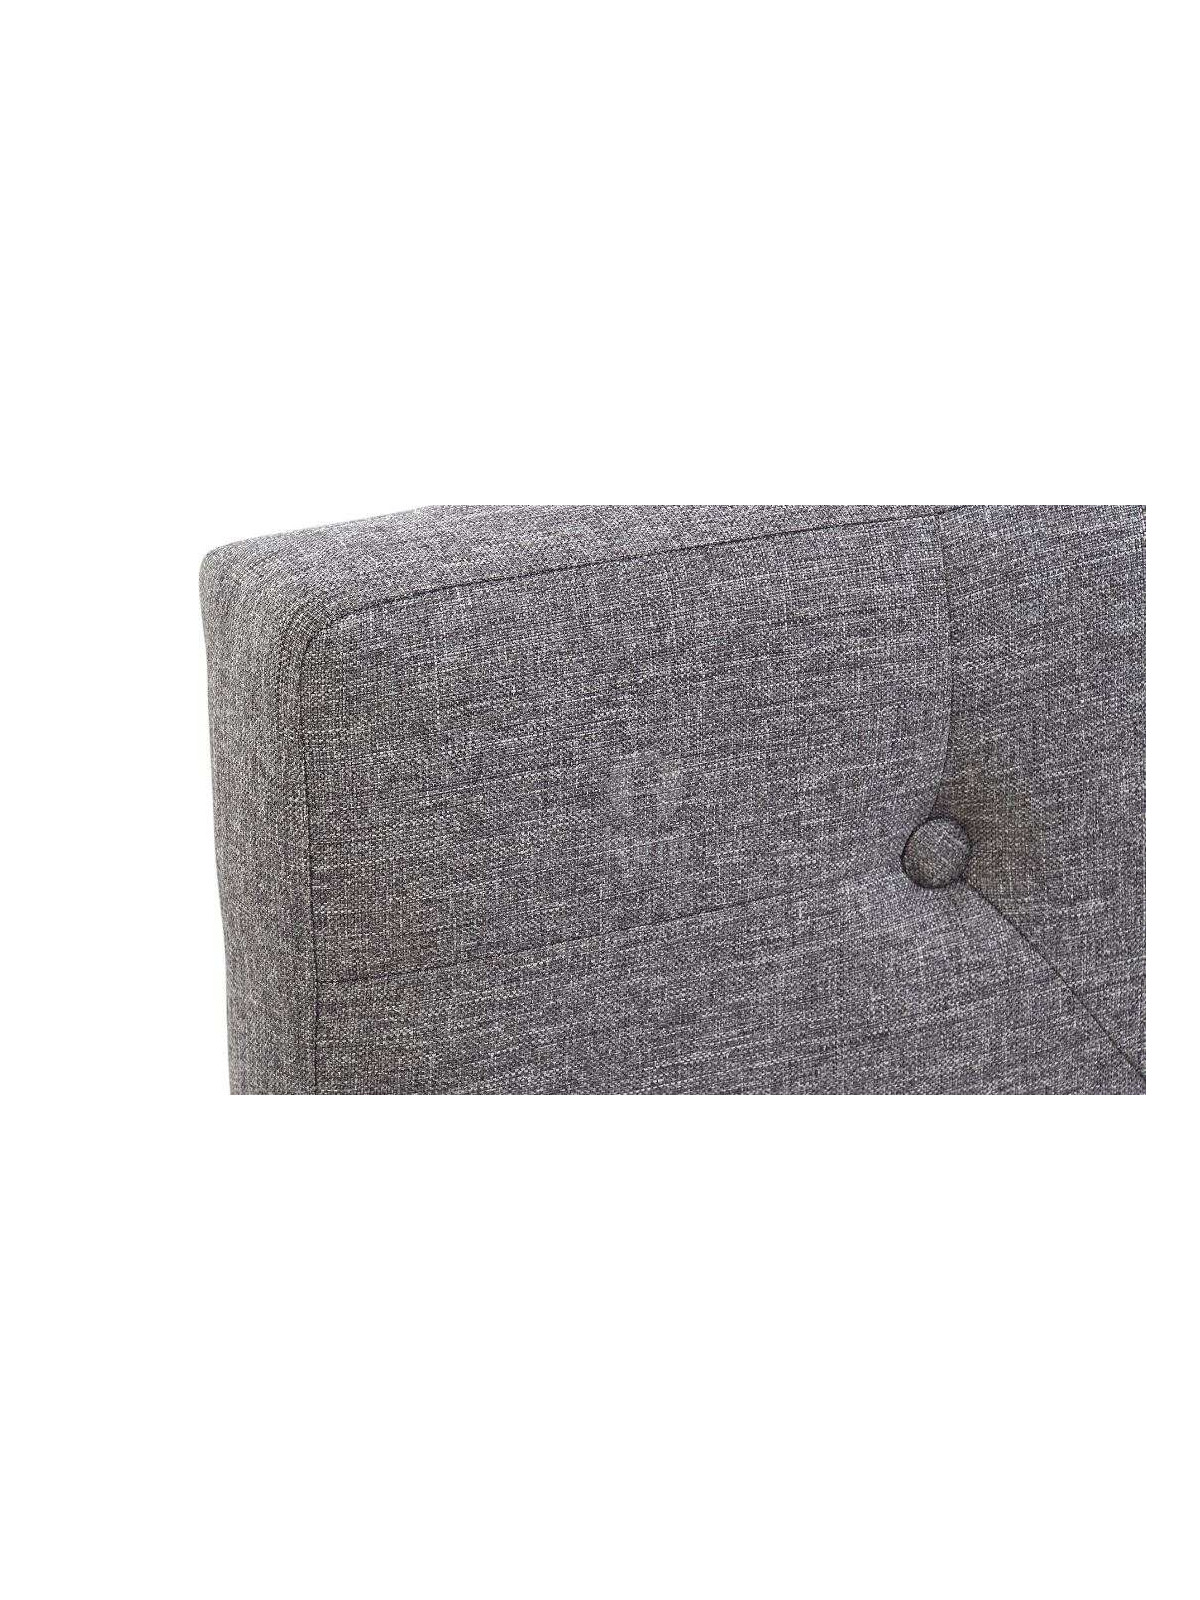 Tête de lit grise chinée capitonnée 160 cm